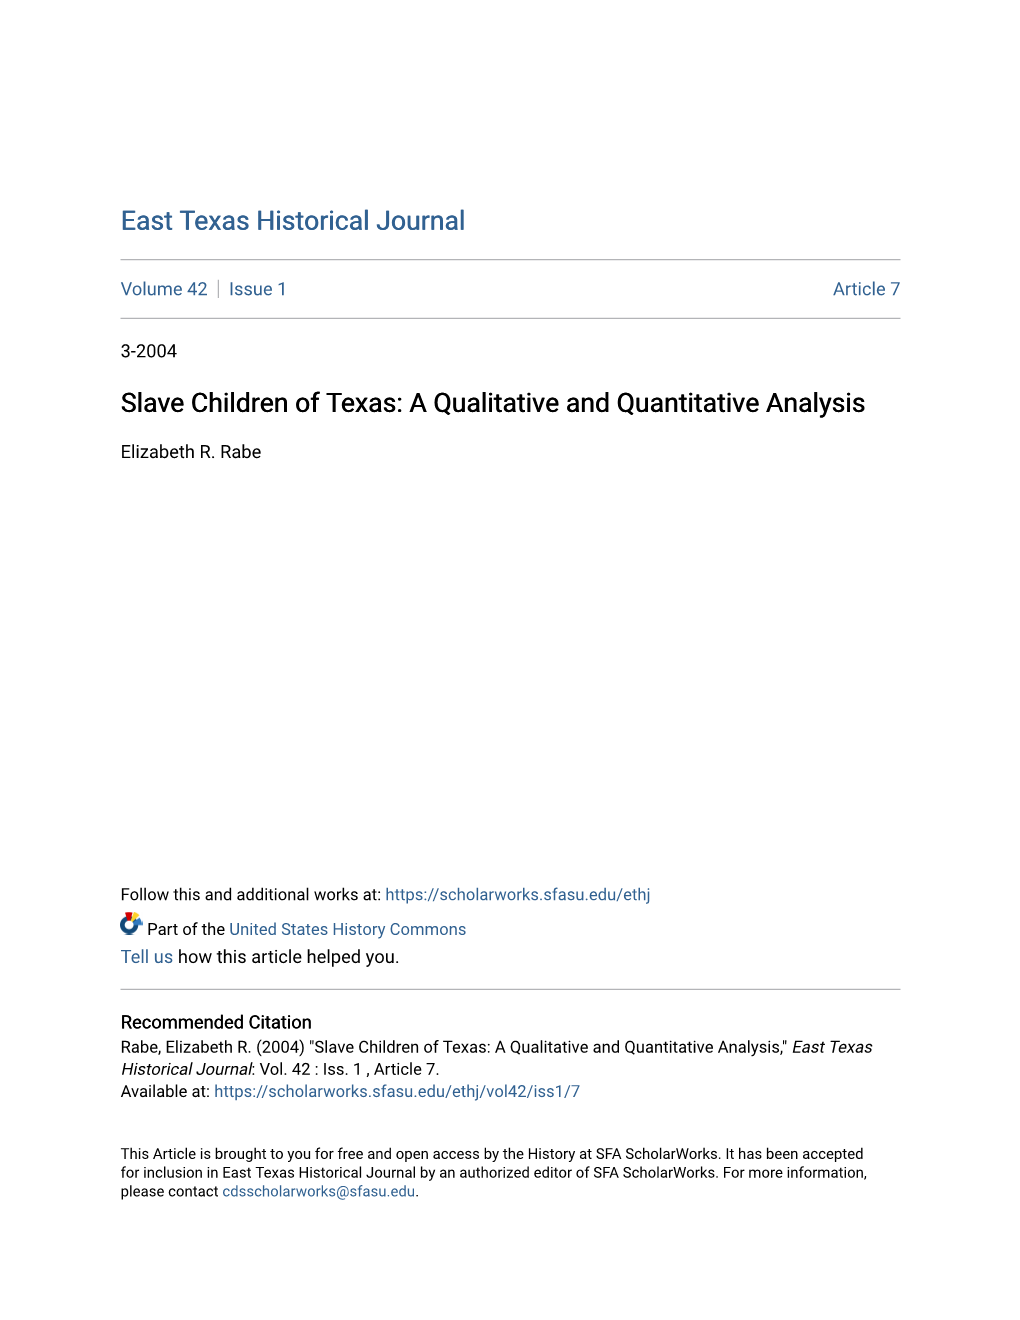 Slave Children of Texas: a Qualitative and Quantitative Analysis